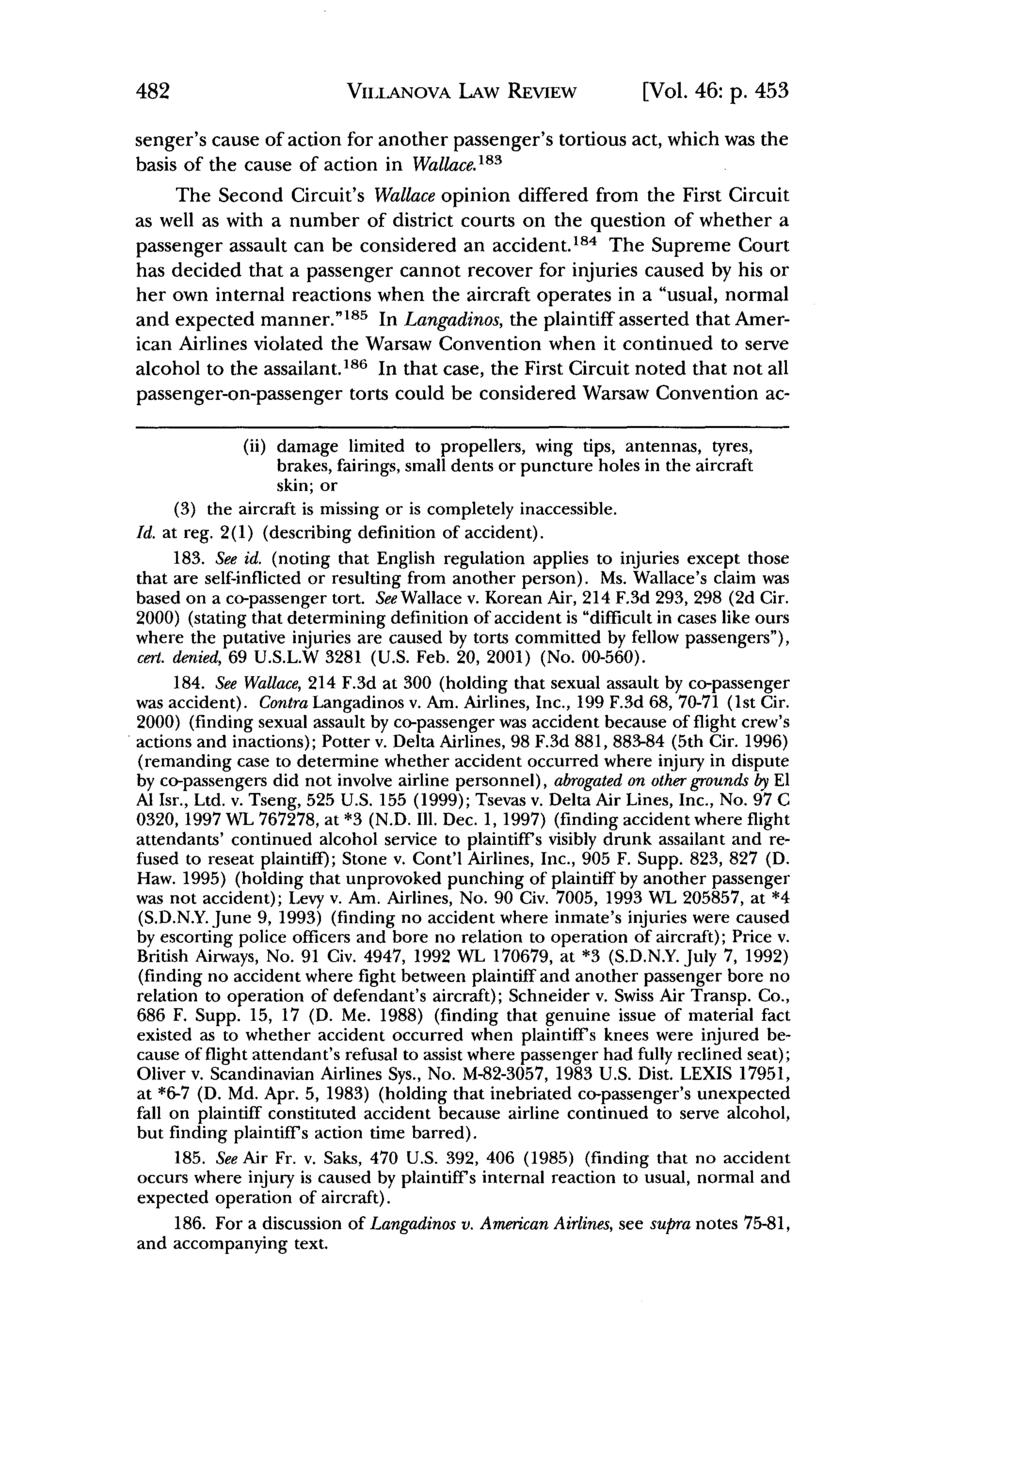 Villanova Law Review, Vol. 46, Iss. 2 [2001], Art. 4 VIILANOVA LAW REVIEW [Vol. 46: p.